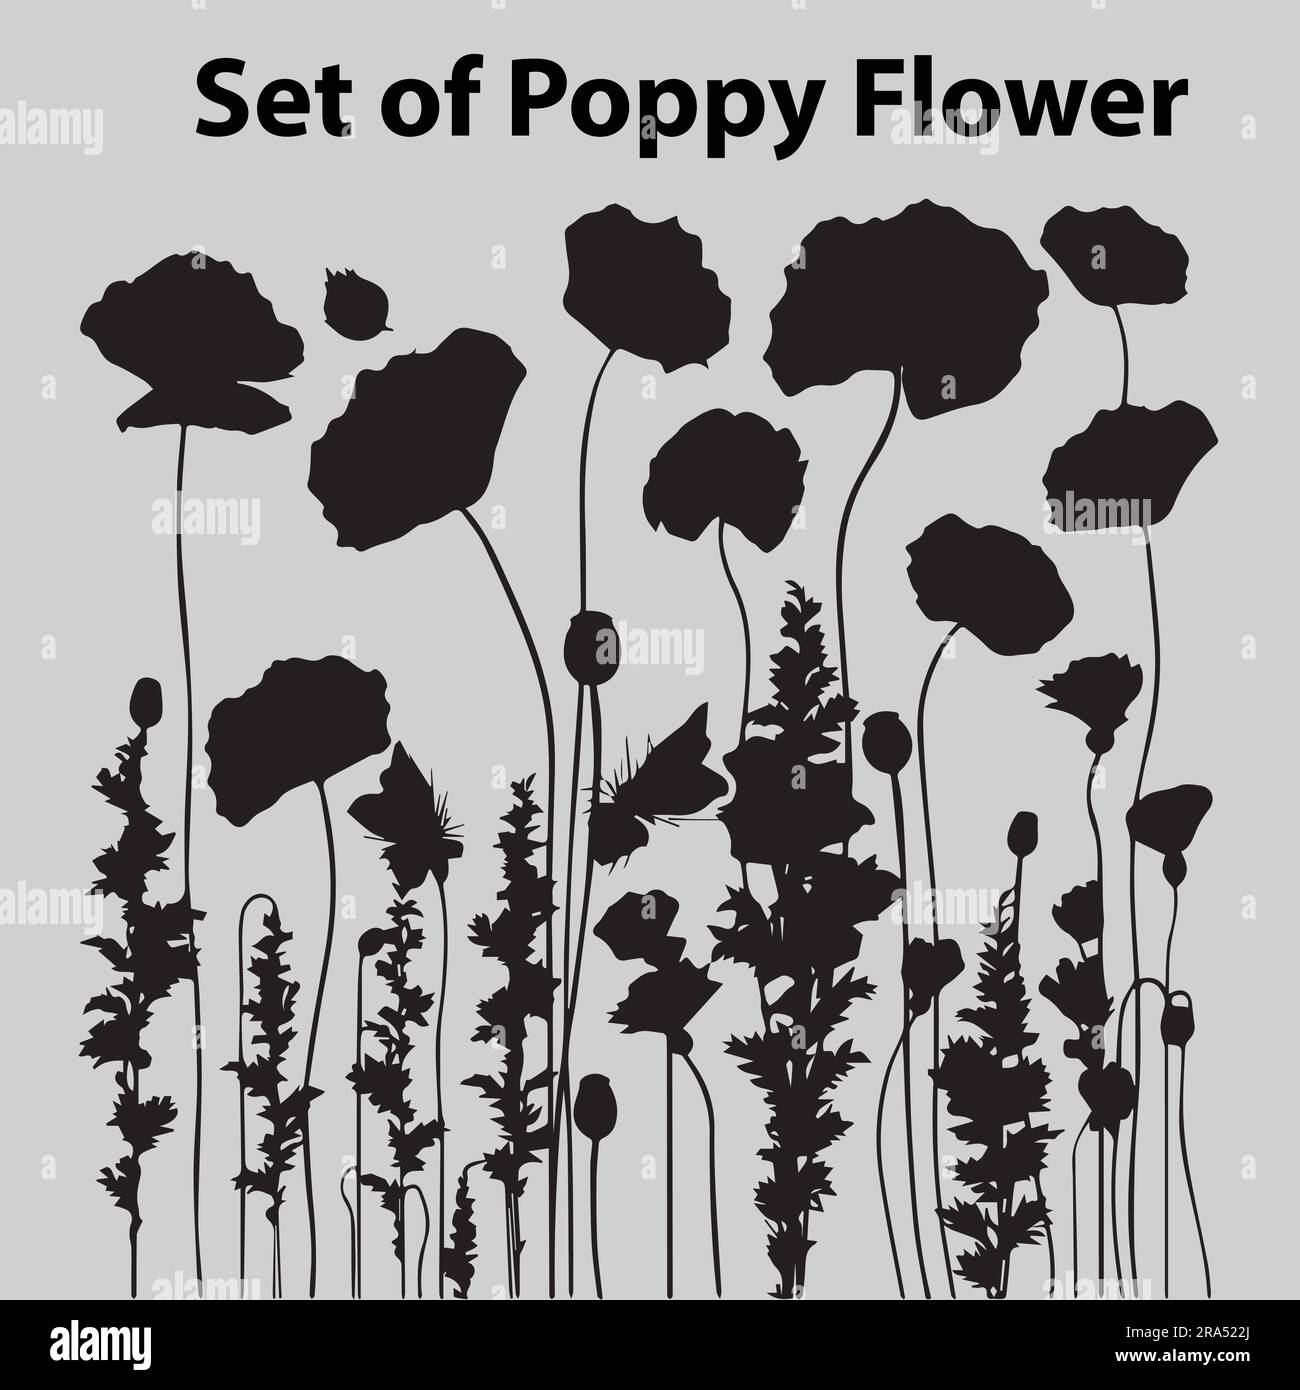 A set of silhouette poppy flower vector illustration Stock Vector